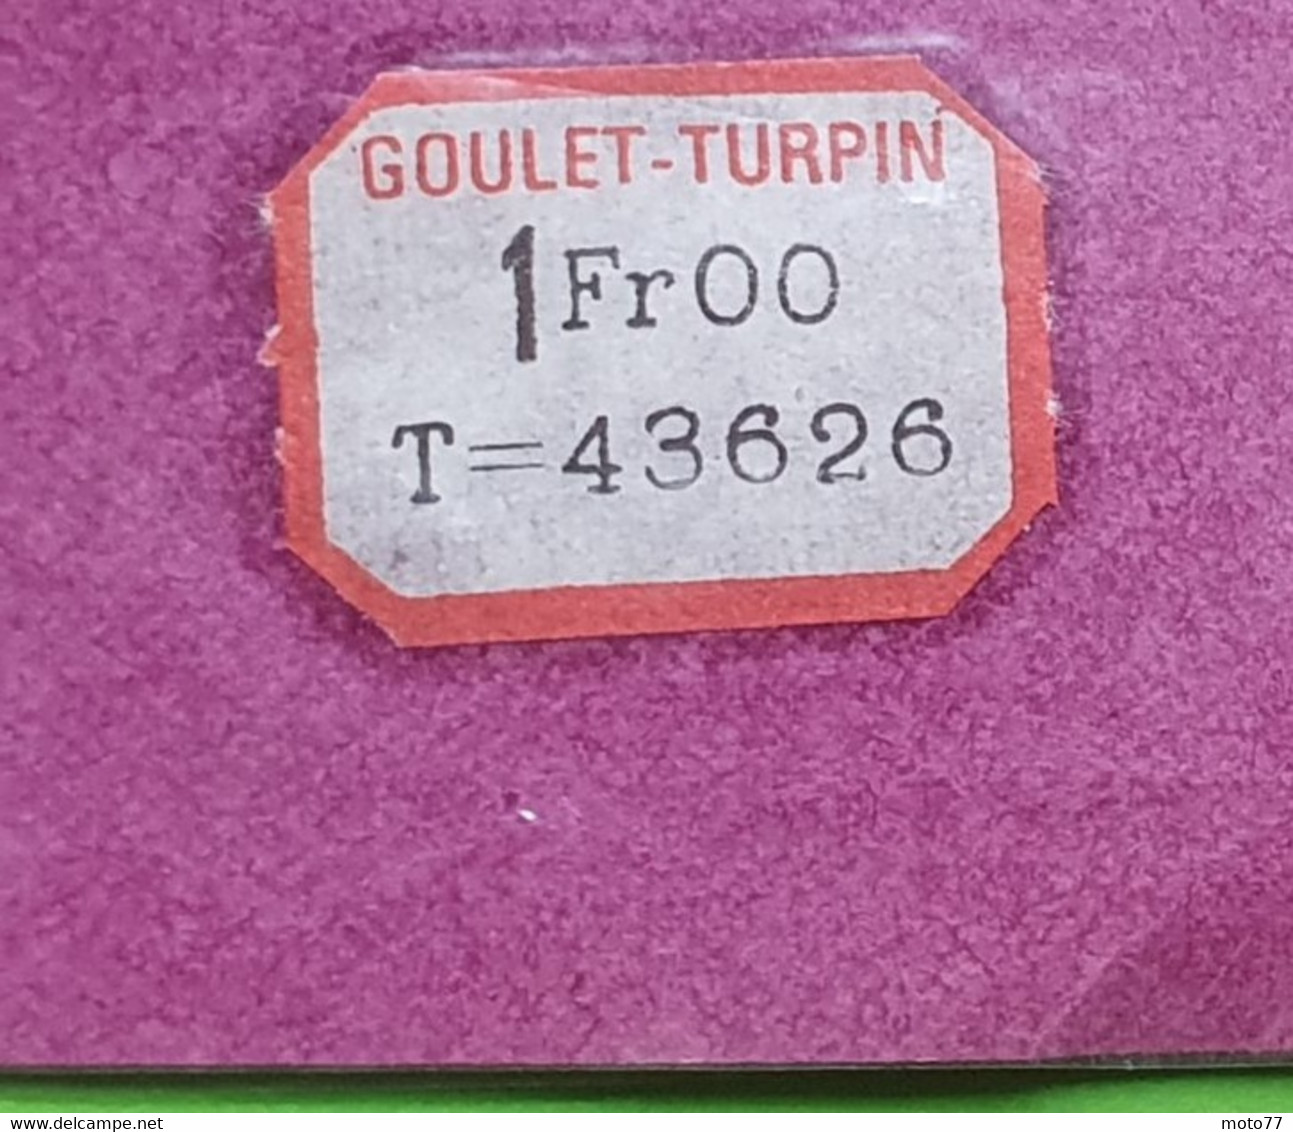 Ancien NAPPERON rond - environ diamètre 16 cm - Plastique - "neuf de stock" magasin GOULET TURPIN Reims - vers 1960